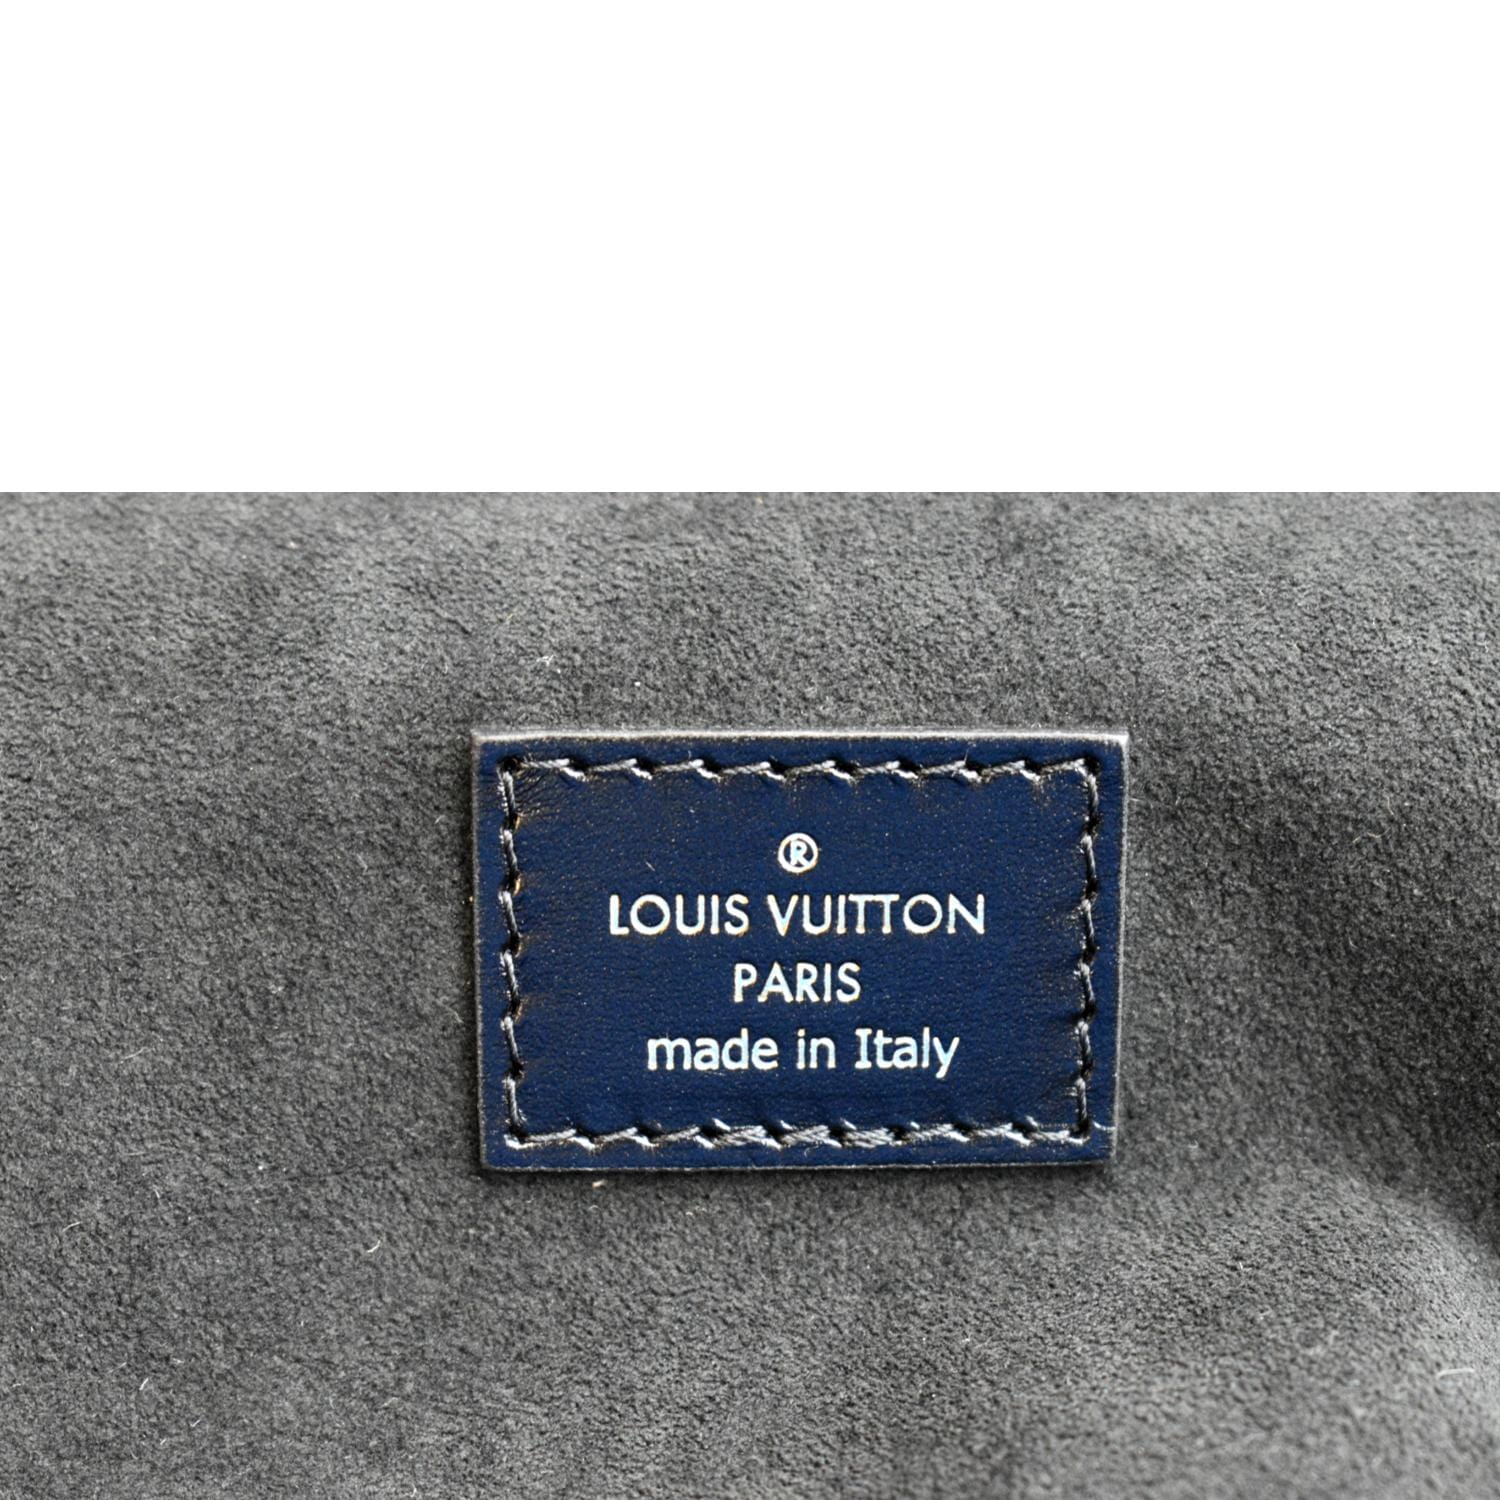 ╭♥ รีวิว Louis Vuitton Pouch Monogram & Damier PM ราคาหลักพัน